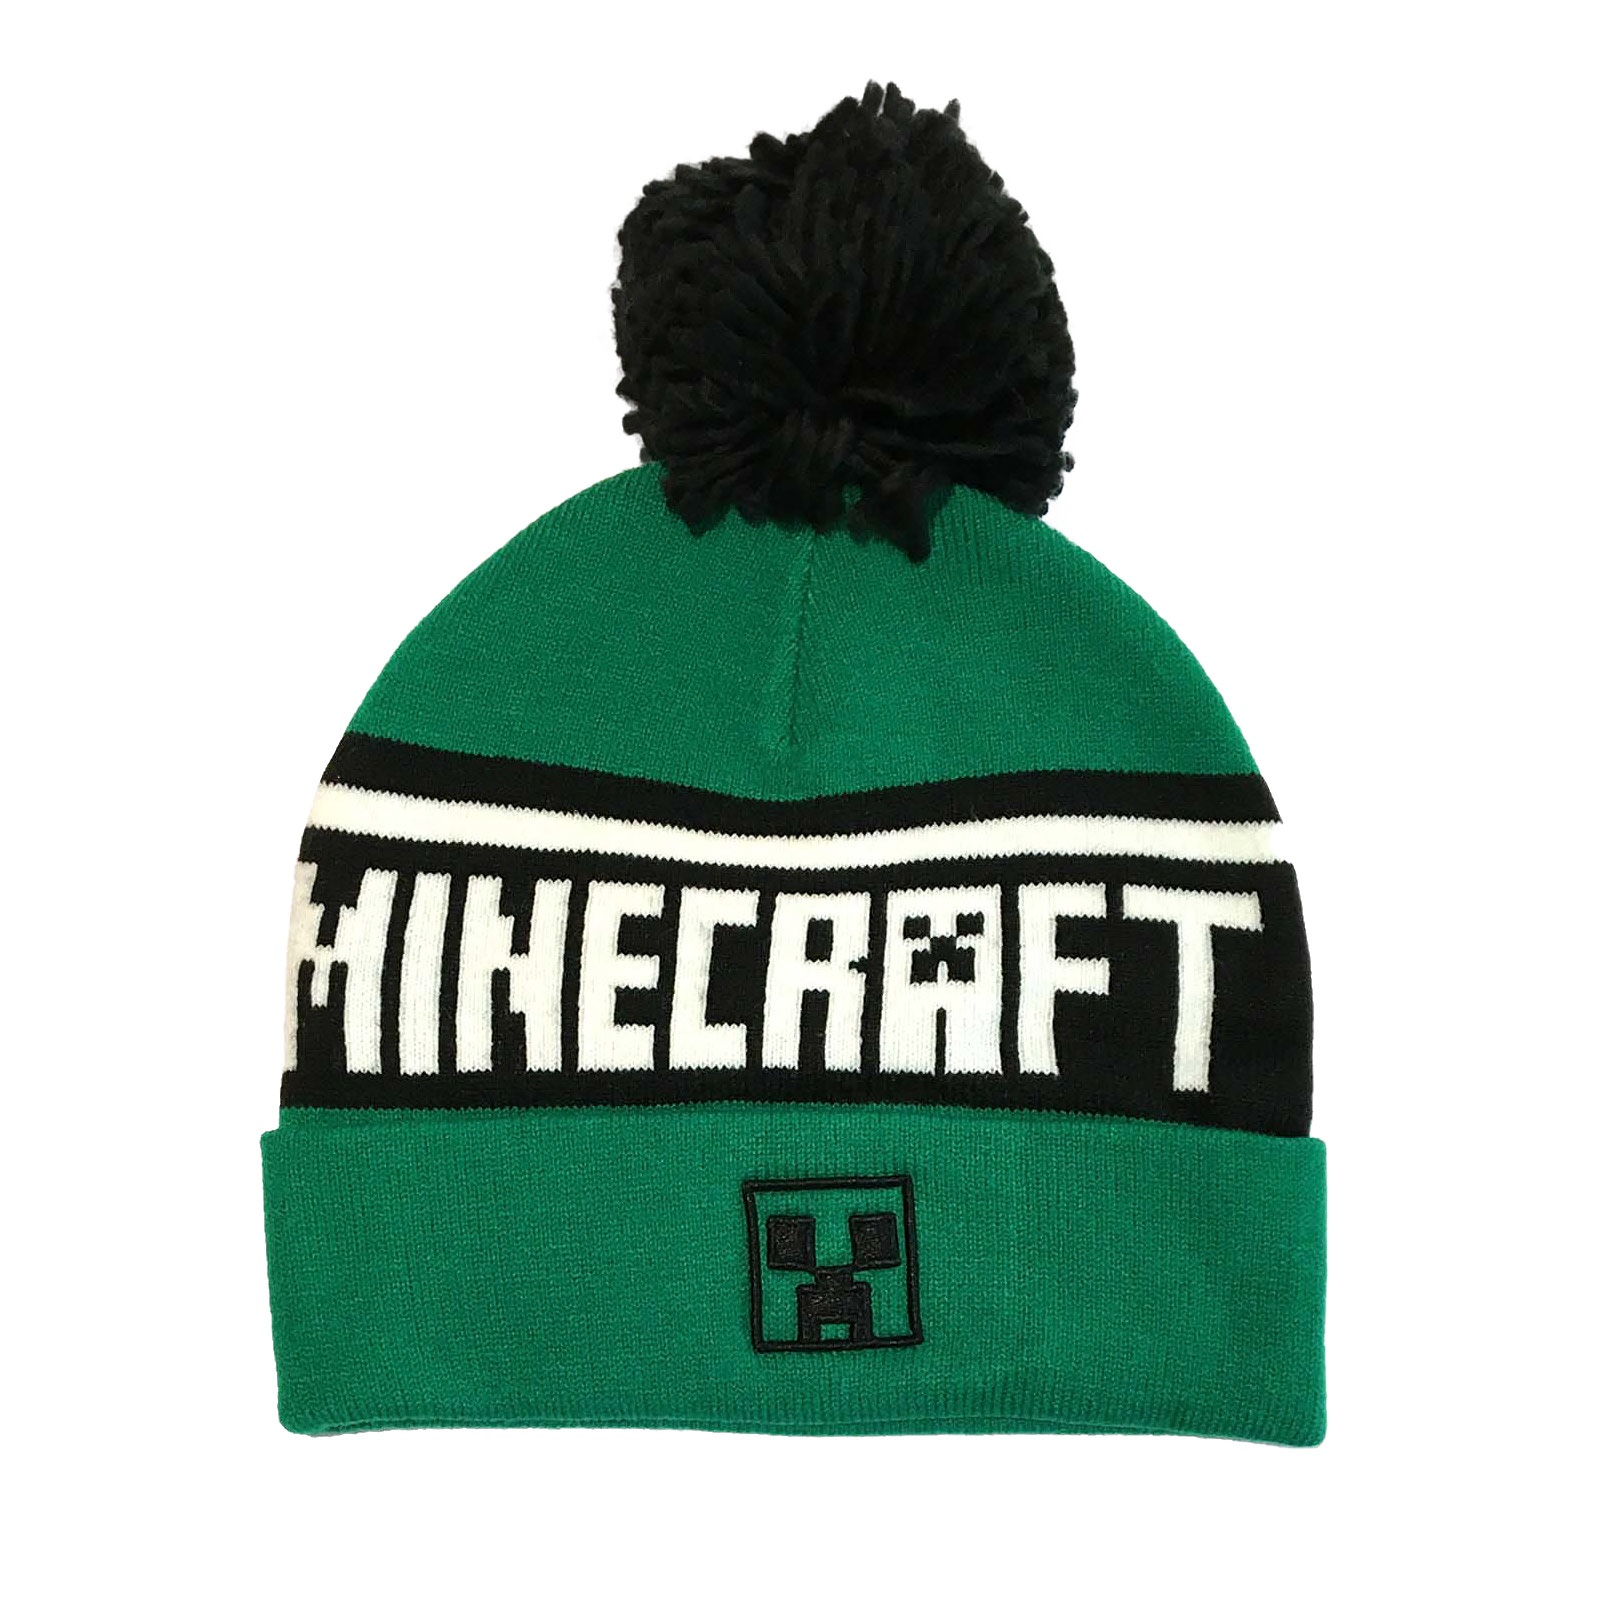 Minecraft - Creeper Logo Mütze mit Bommel